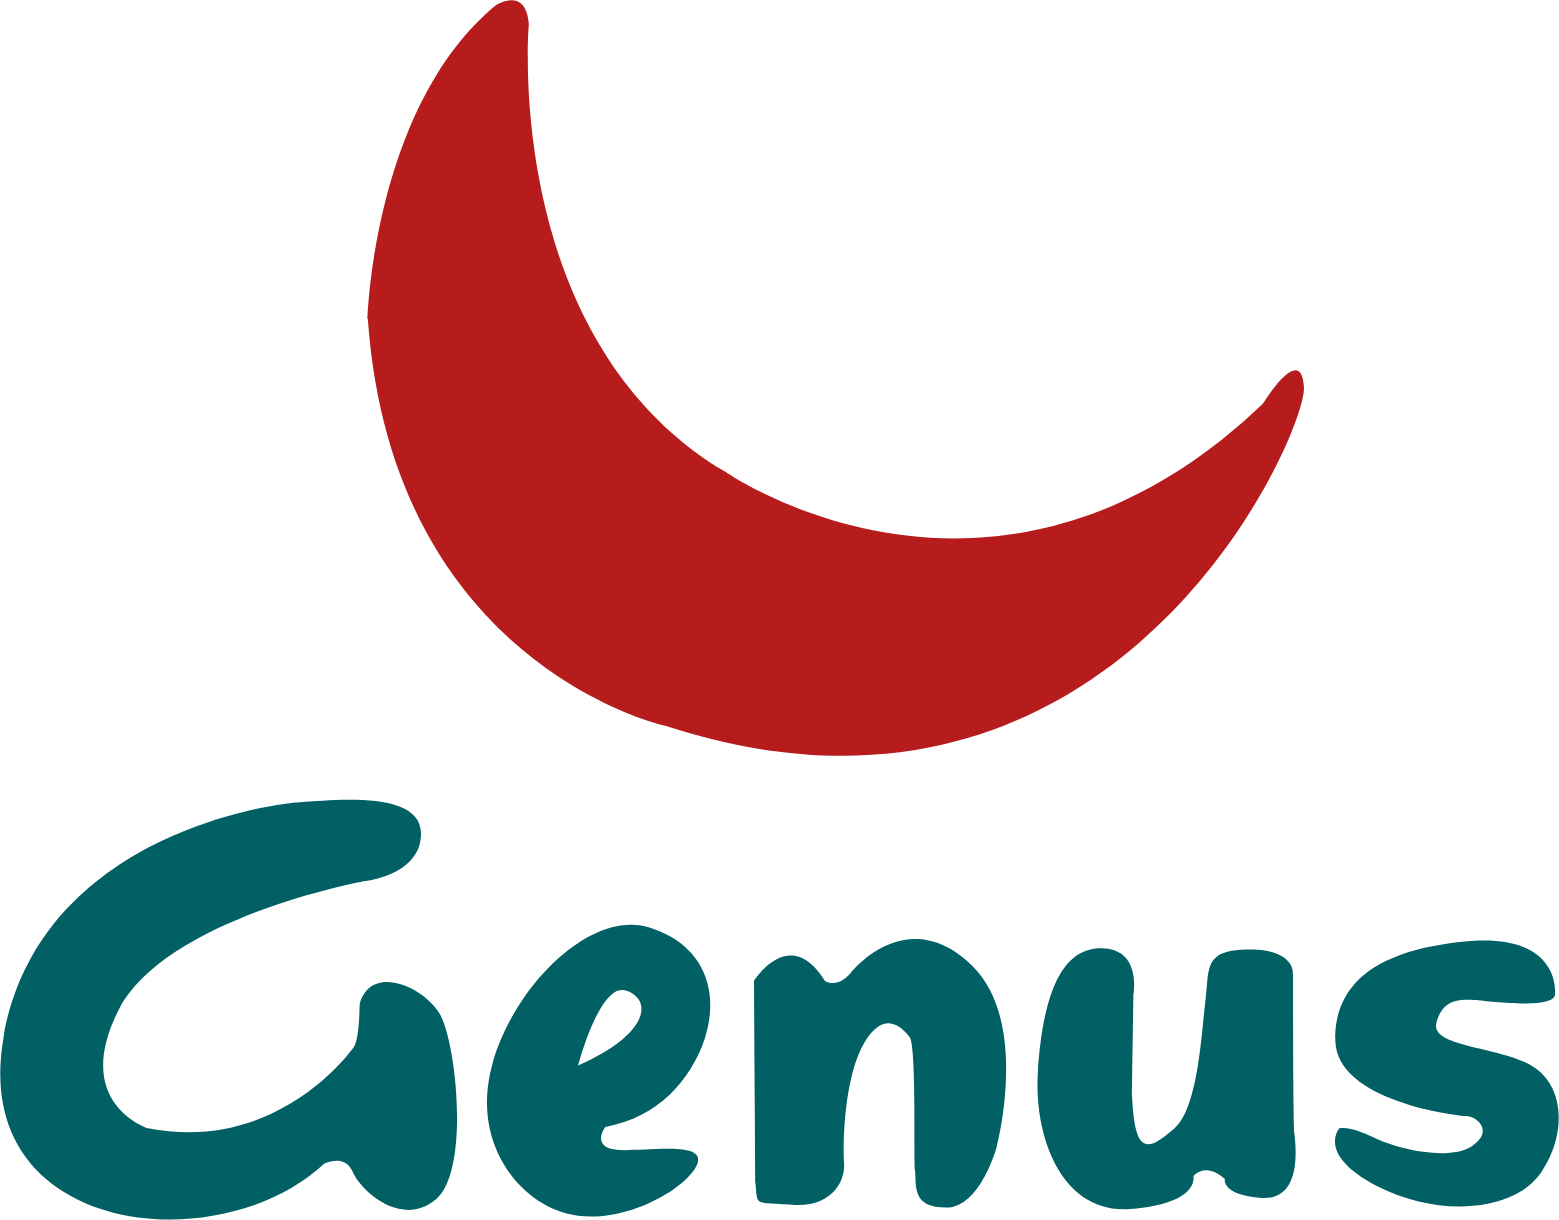 Genus logo large (transparent PNG)